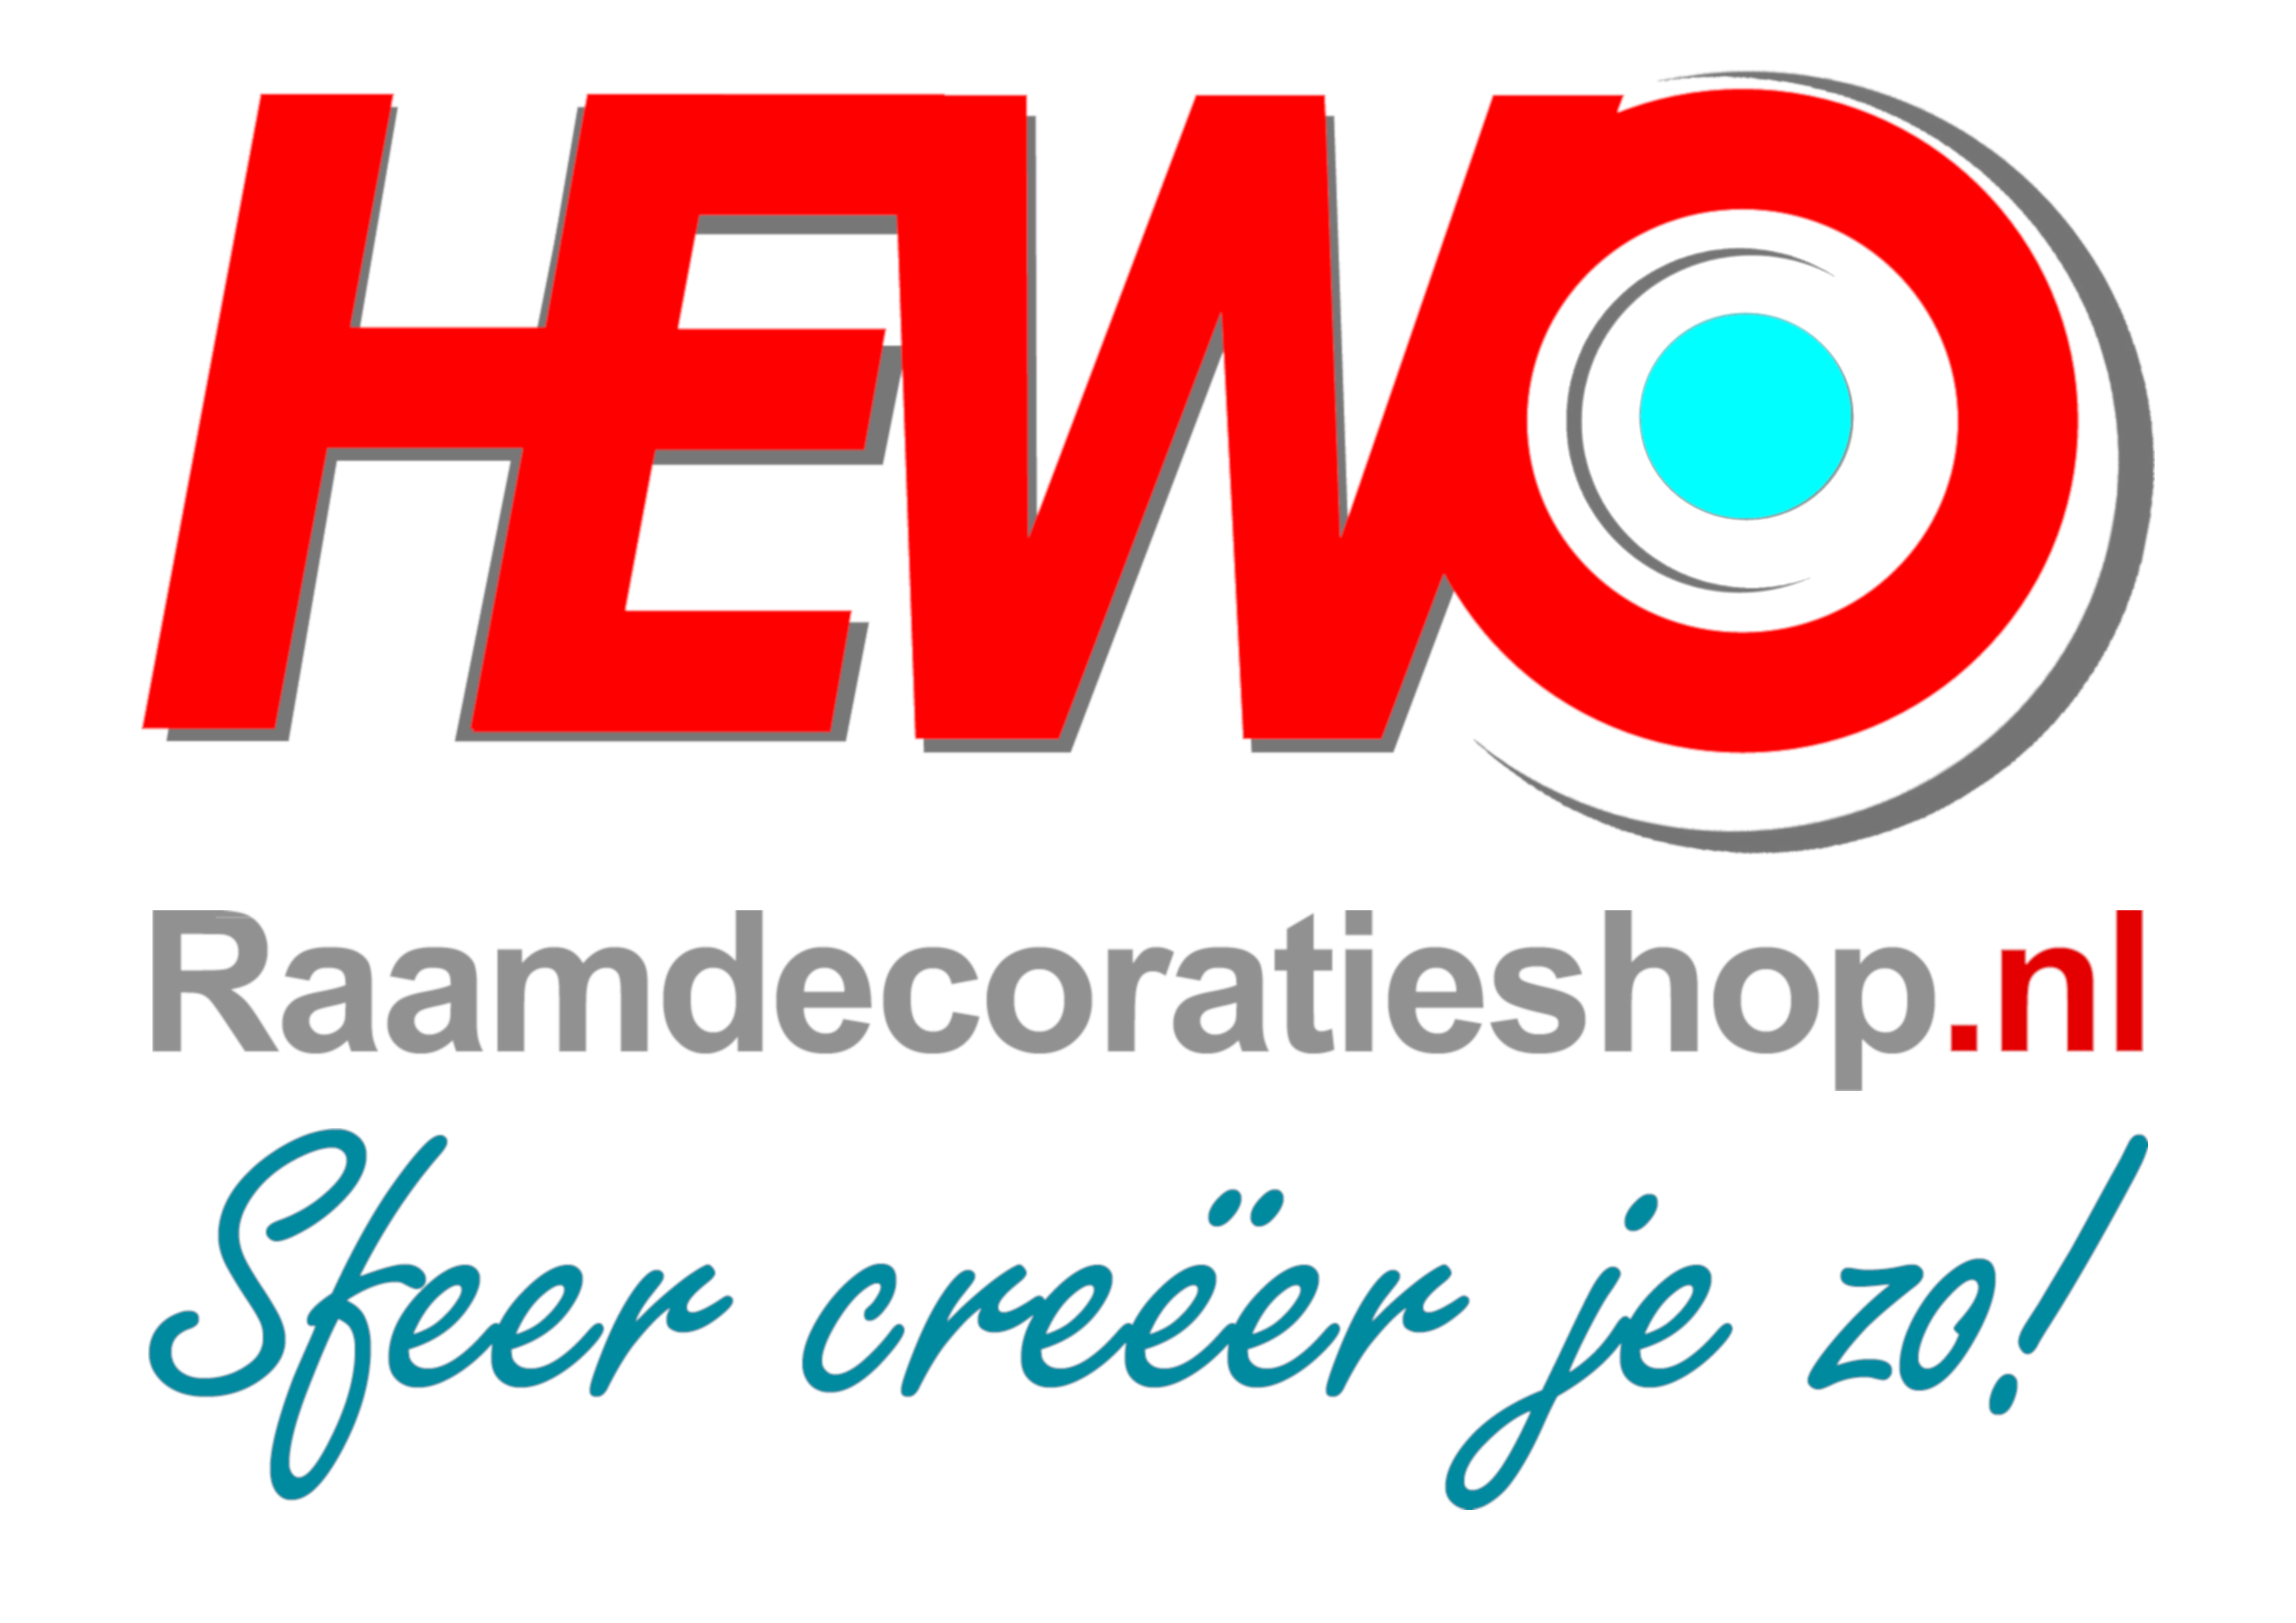 Foto: HEWO Raamdecoratieshop nl en kernboodschap